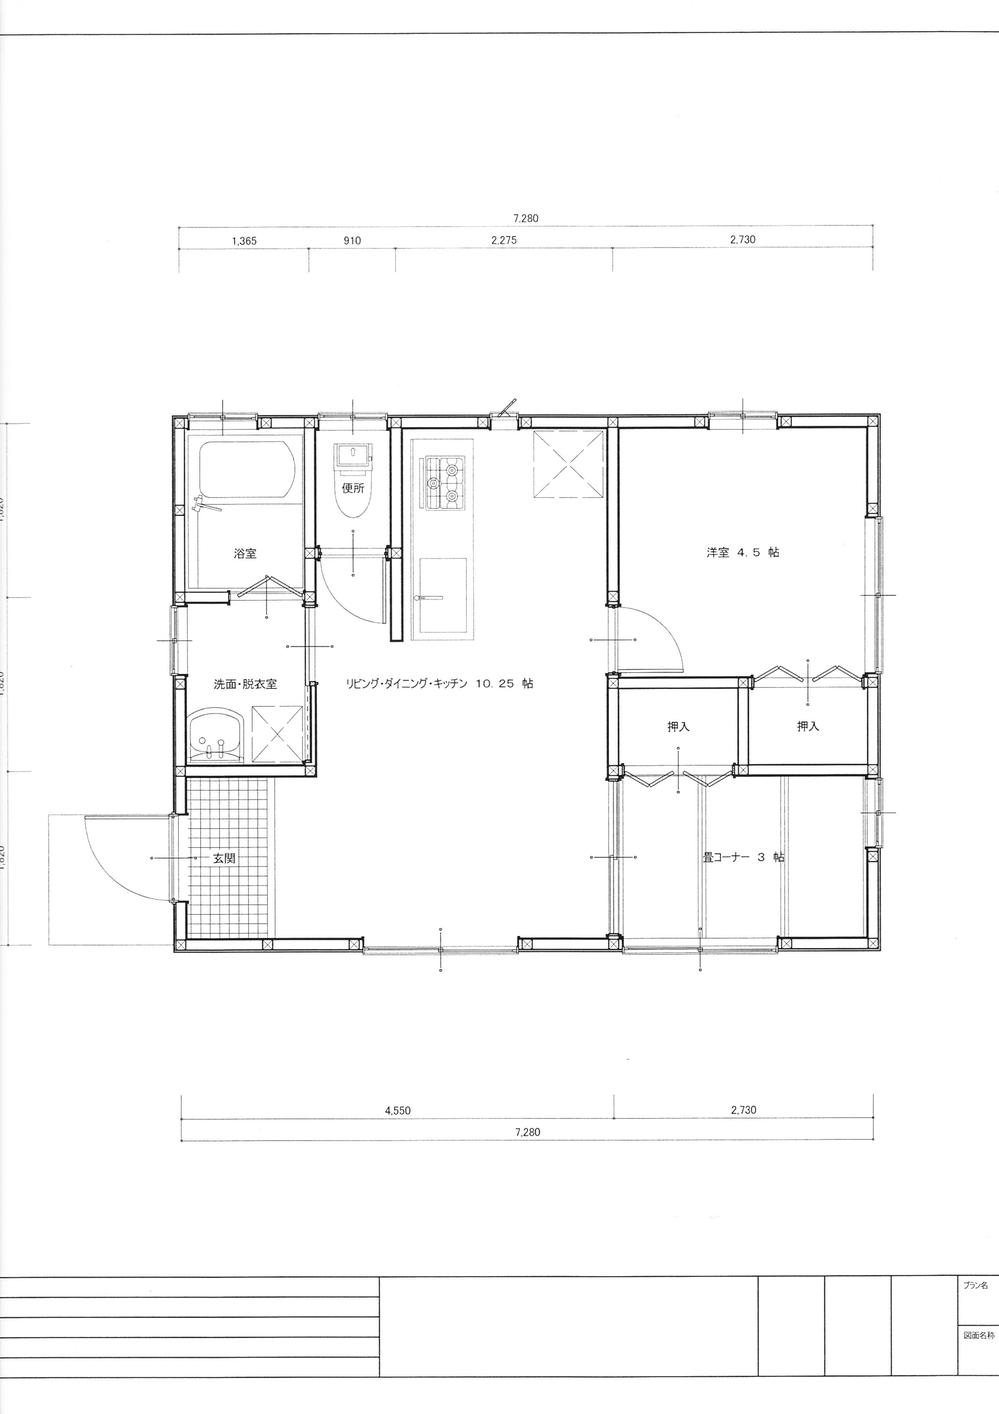 Floor plan. 9.8 million yen, 2LDK, Land area 330 sq m , Building area 39.74 sq m